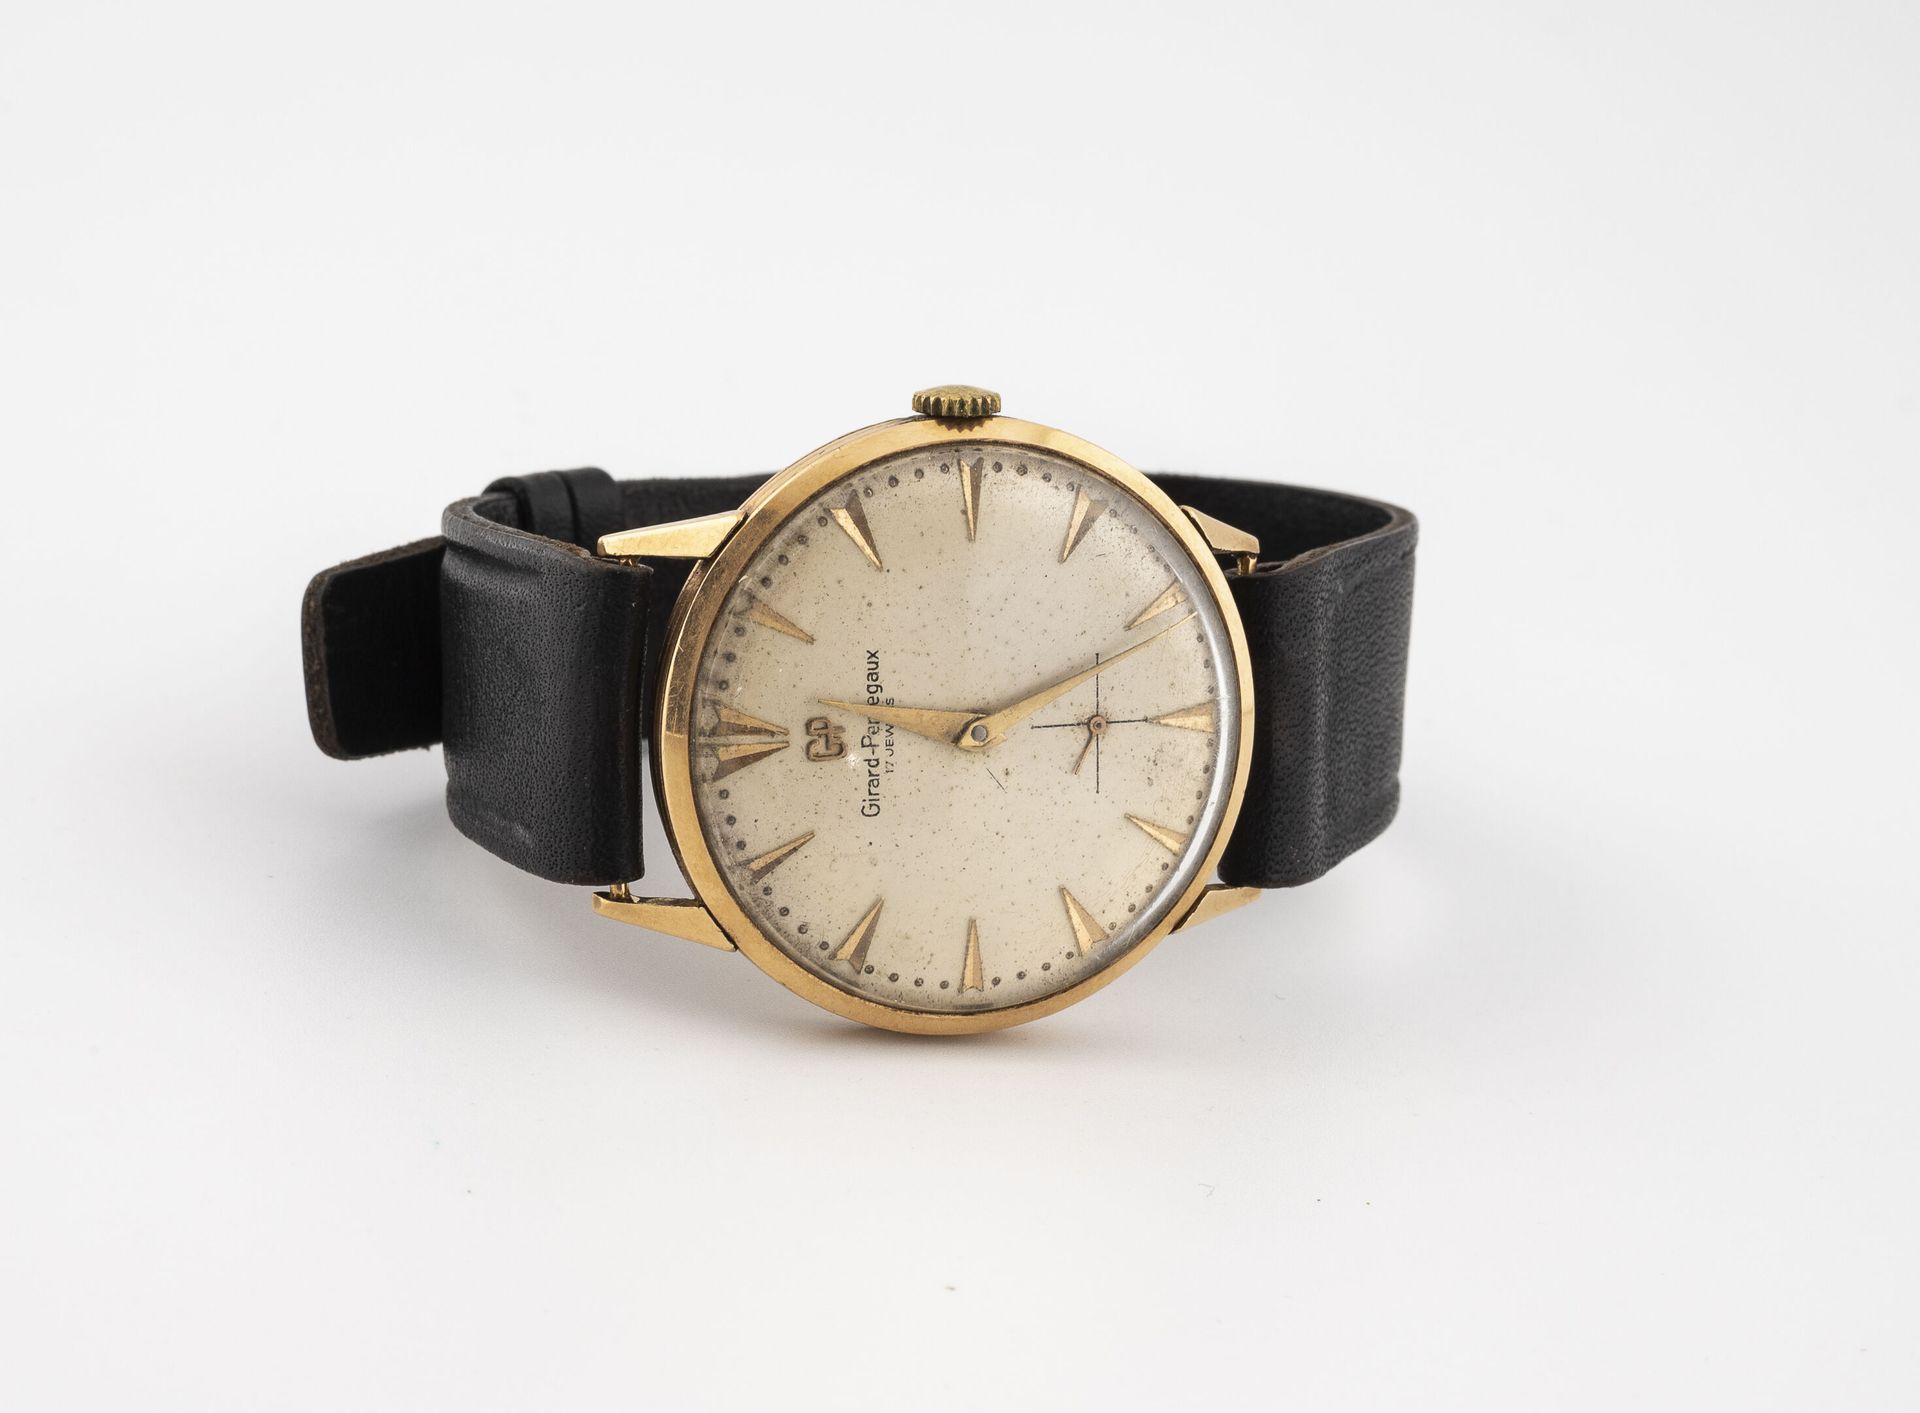 GIRARD PERREGAUX Reloj de pulsera para hombre en oro amarillo (750).

Esfera con&hellip;